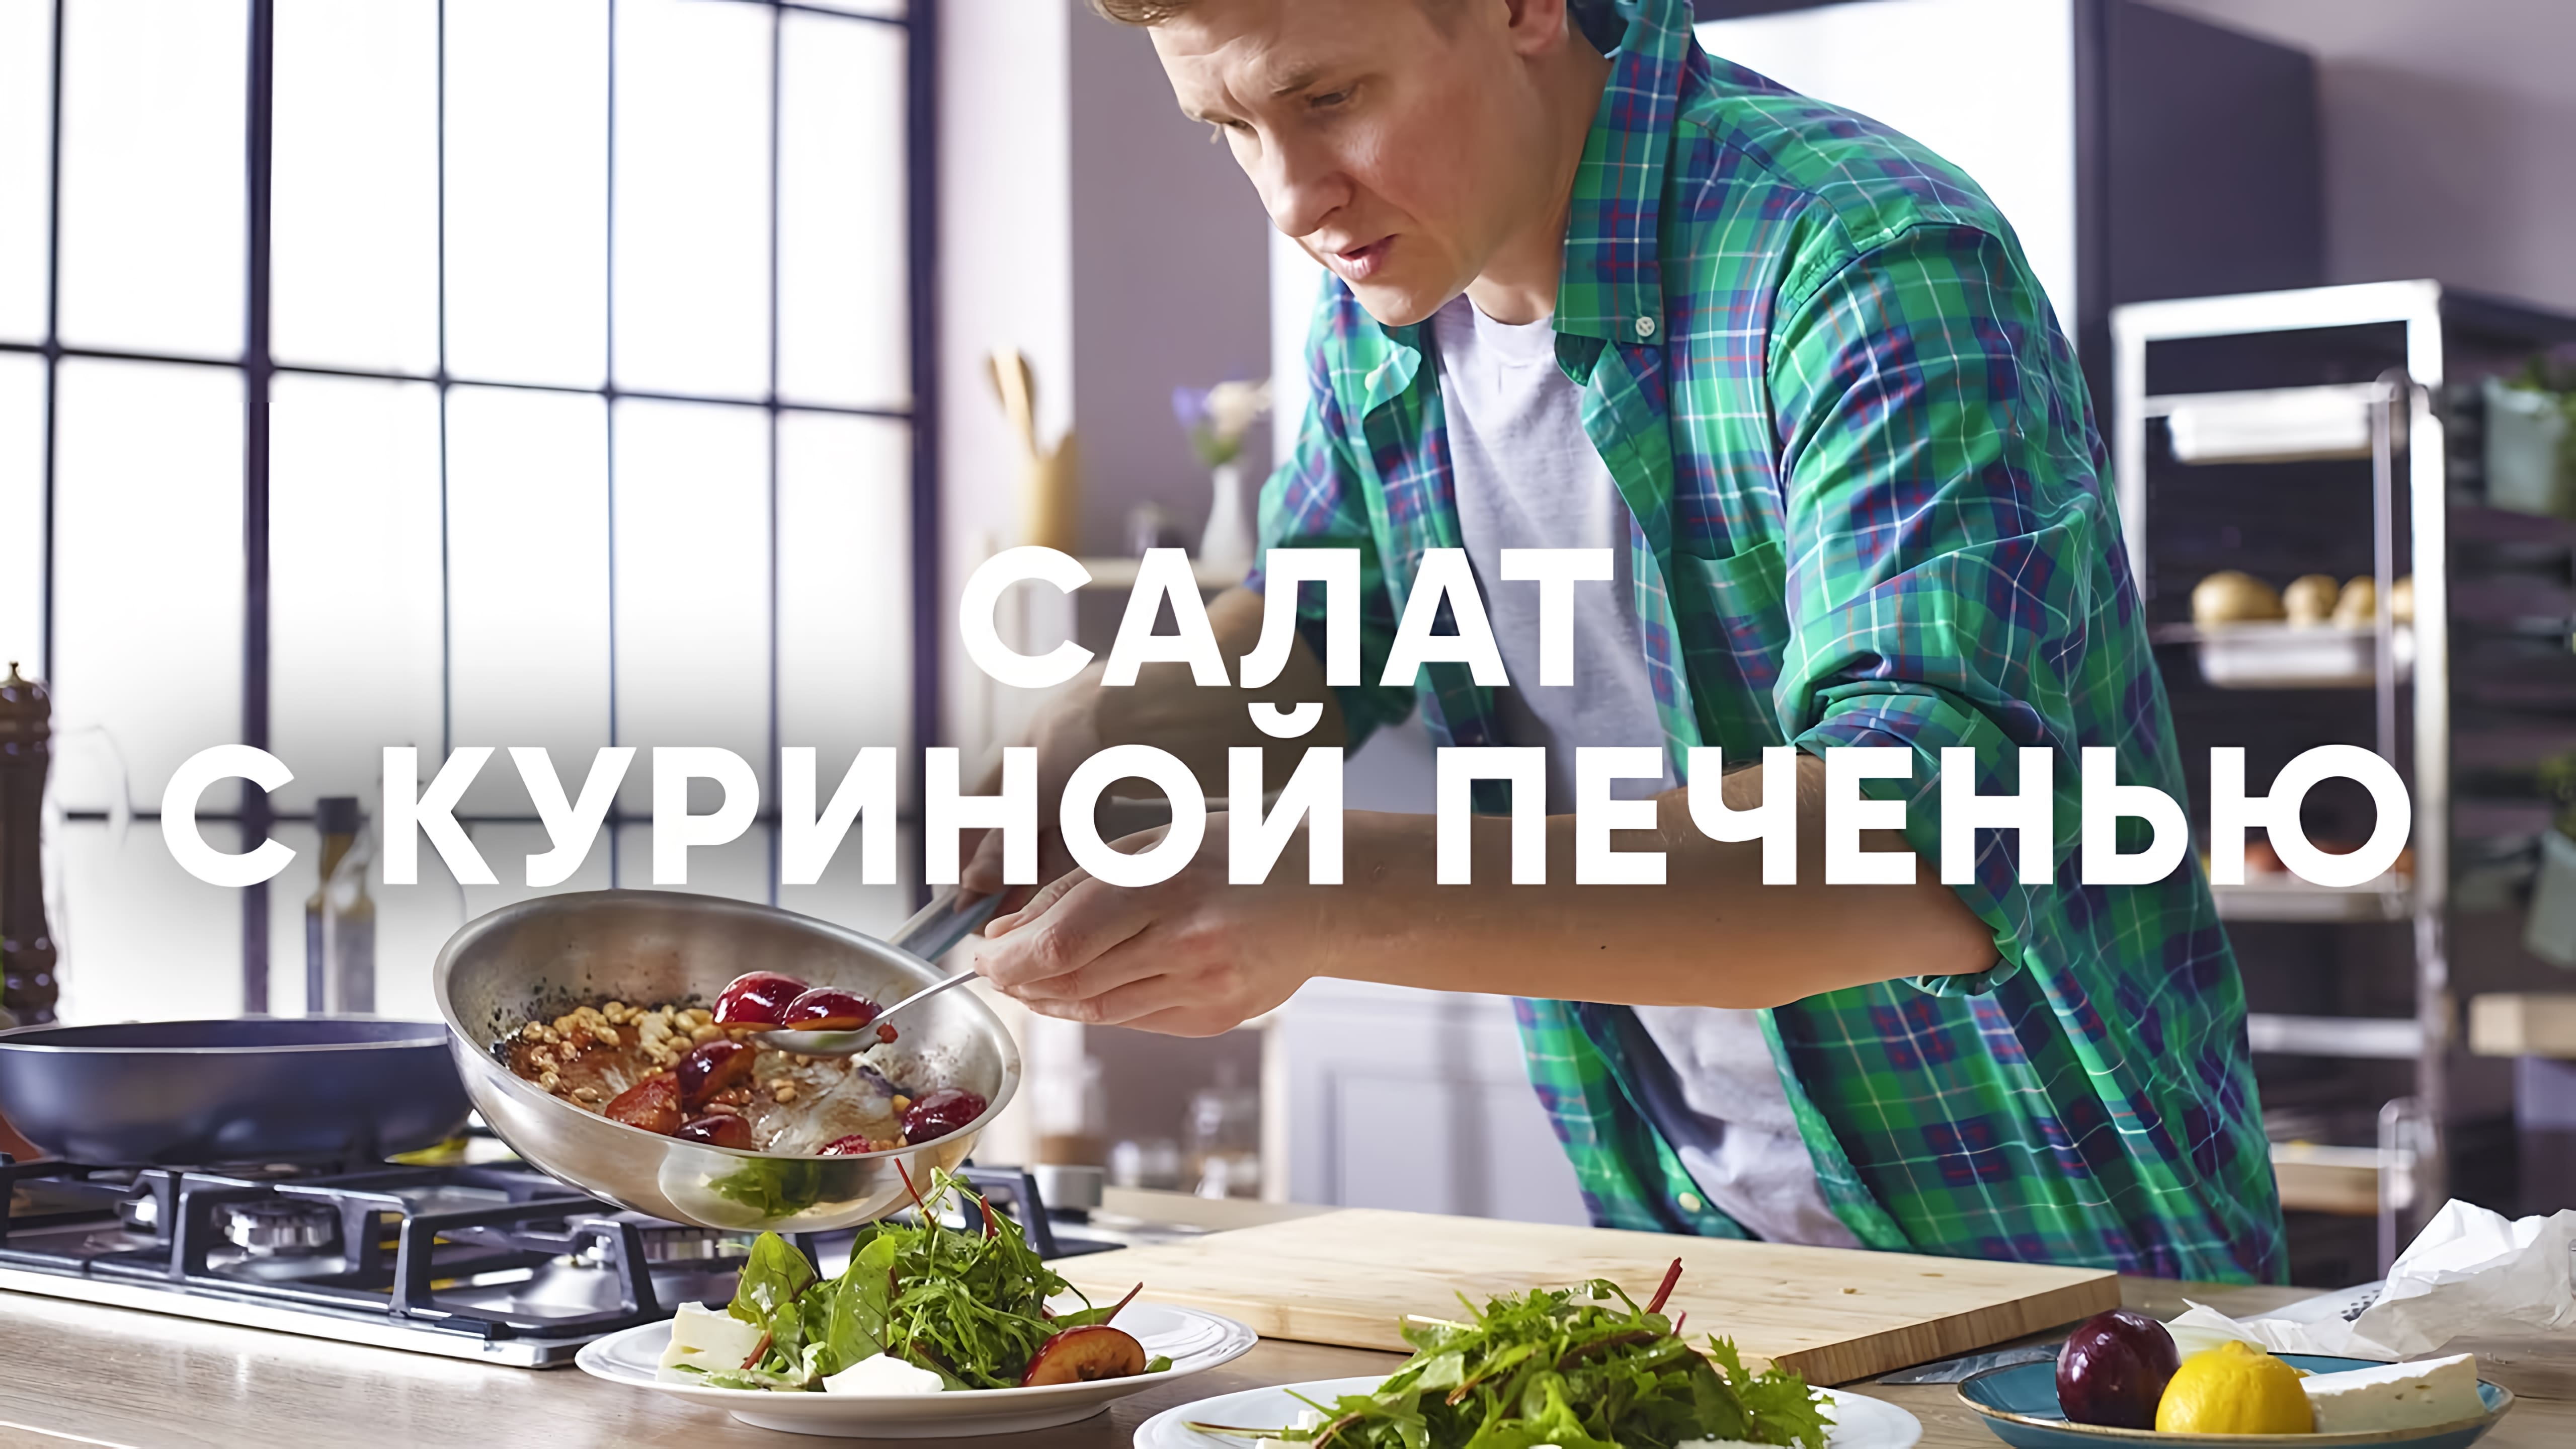 Видео: Теплый салат с куриной печенью и сливой от шефа Бельковича | ПроСто кухня |